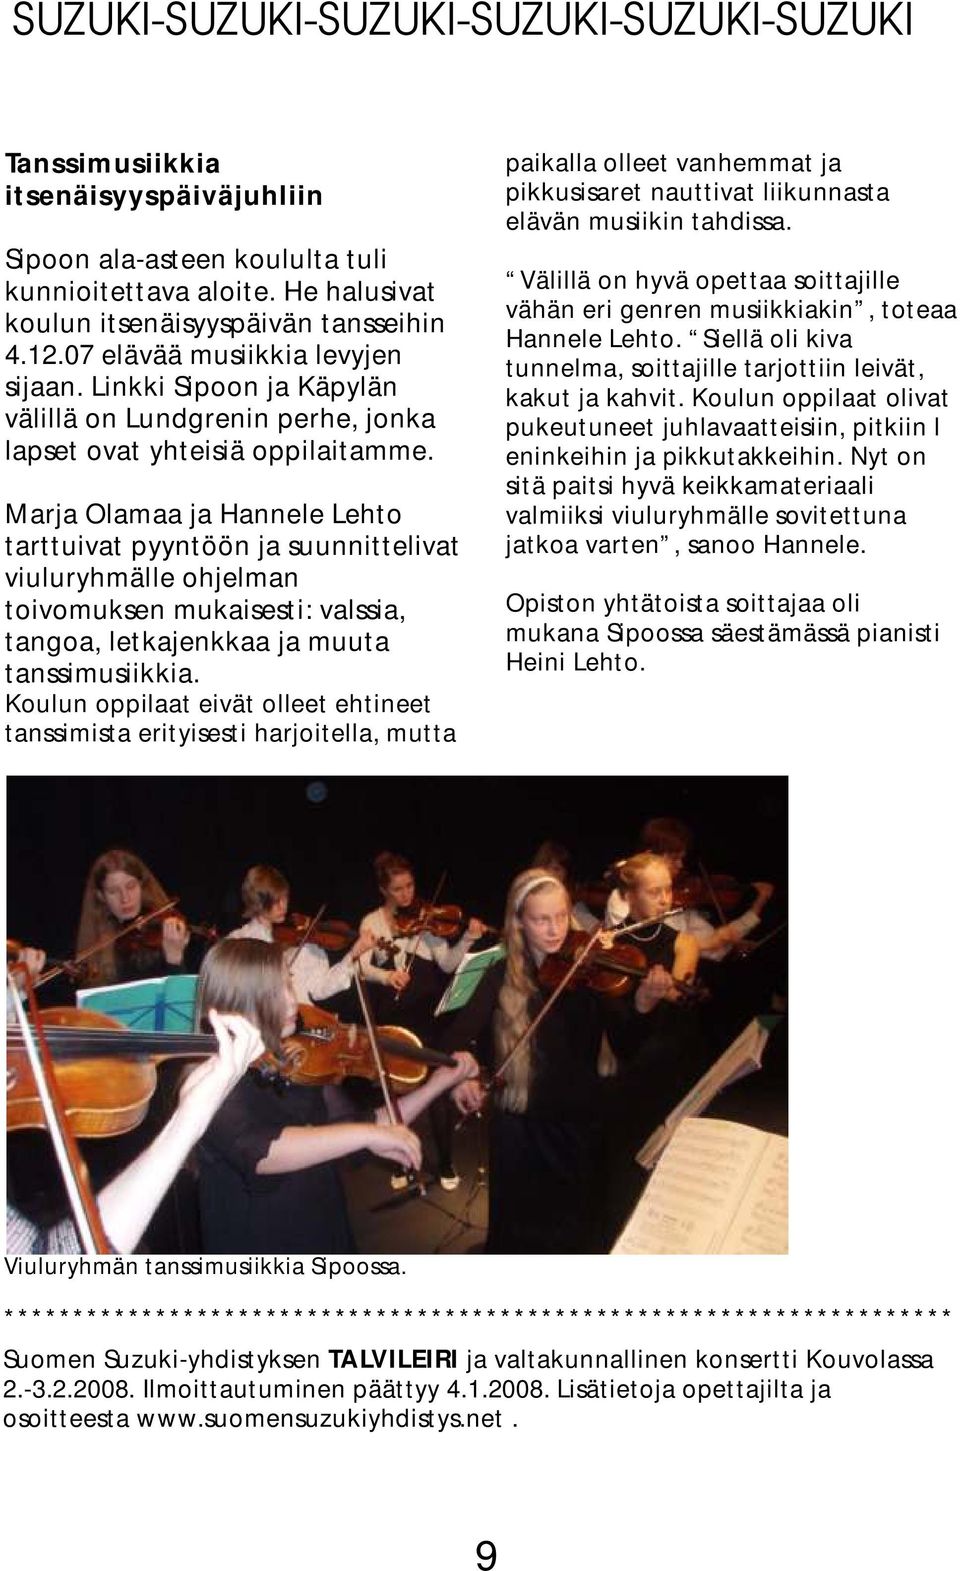 Marja Olamaa ja Hannele Lehto tarttuivat pyyntöön ja suunnittelivat viuluryhmälle ohjelman toivomuksen mukaisesti: valssia, tangoa, letkajenkkaa ja muuta tanssimusiikkia.